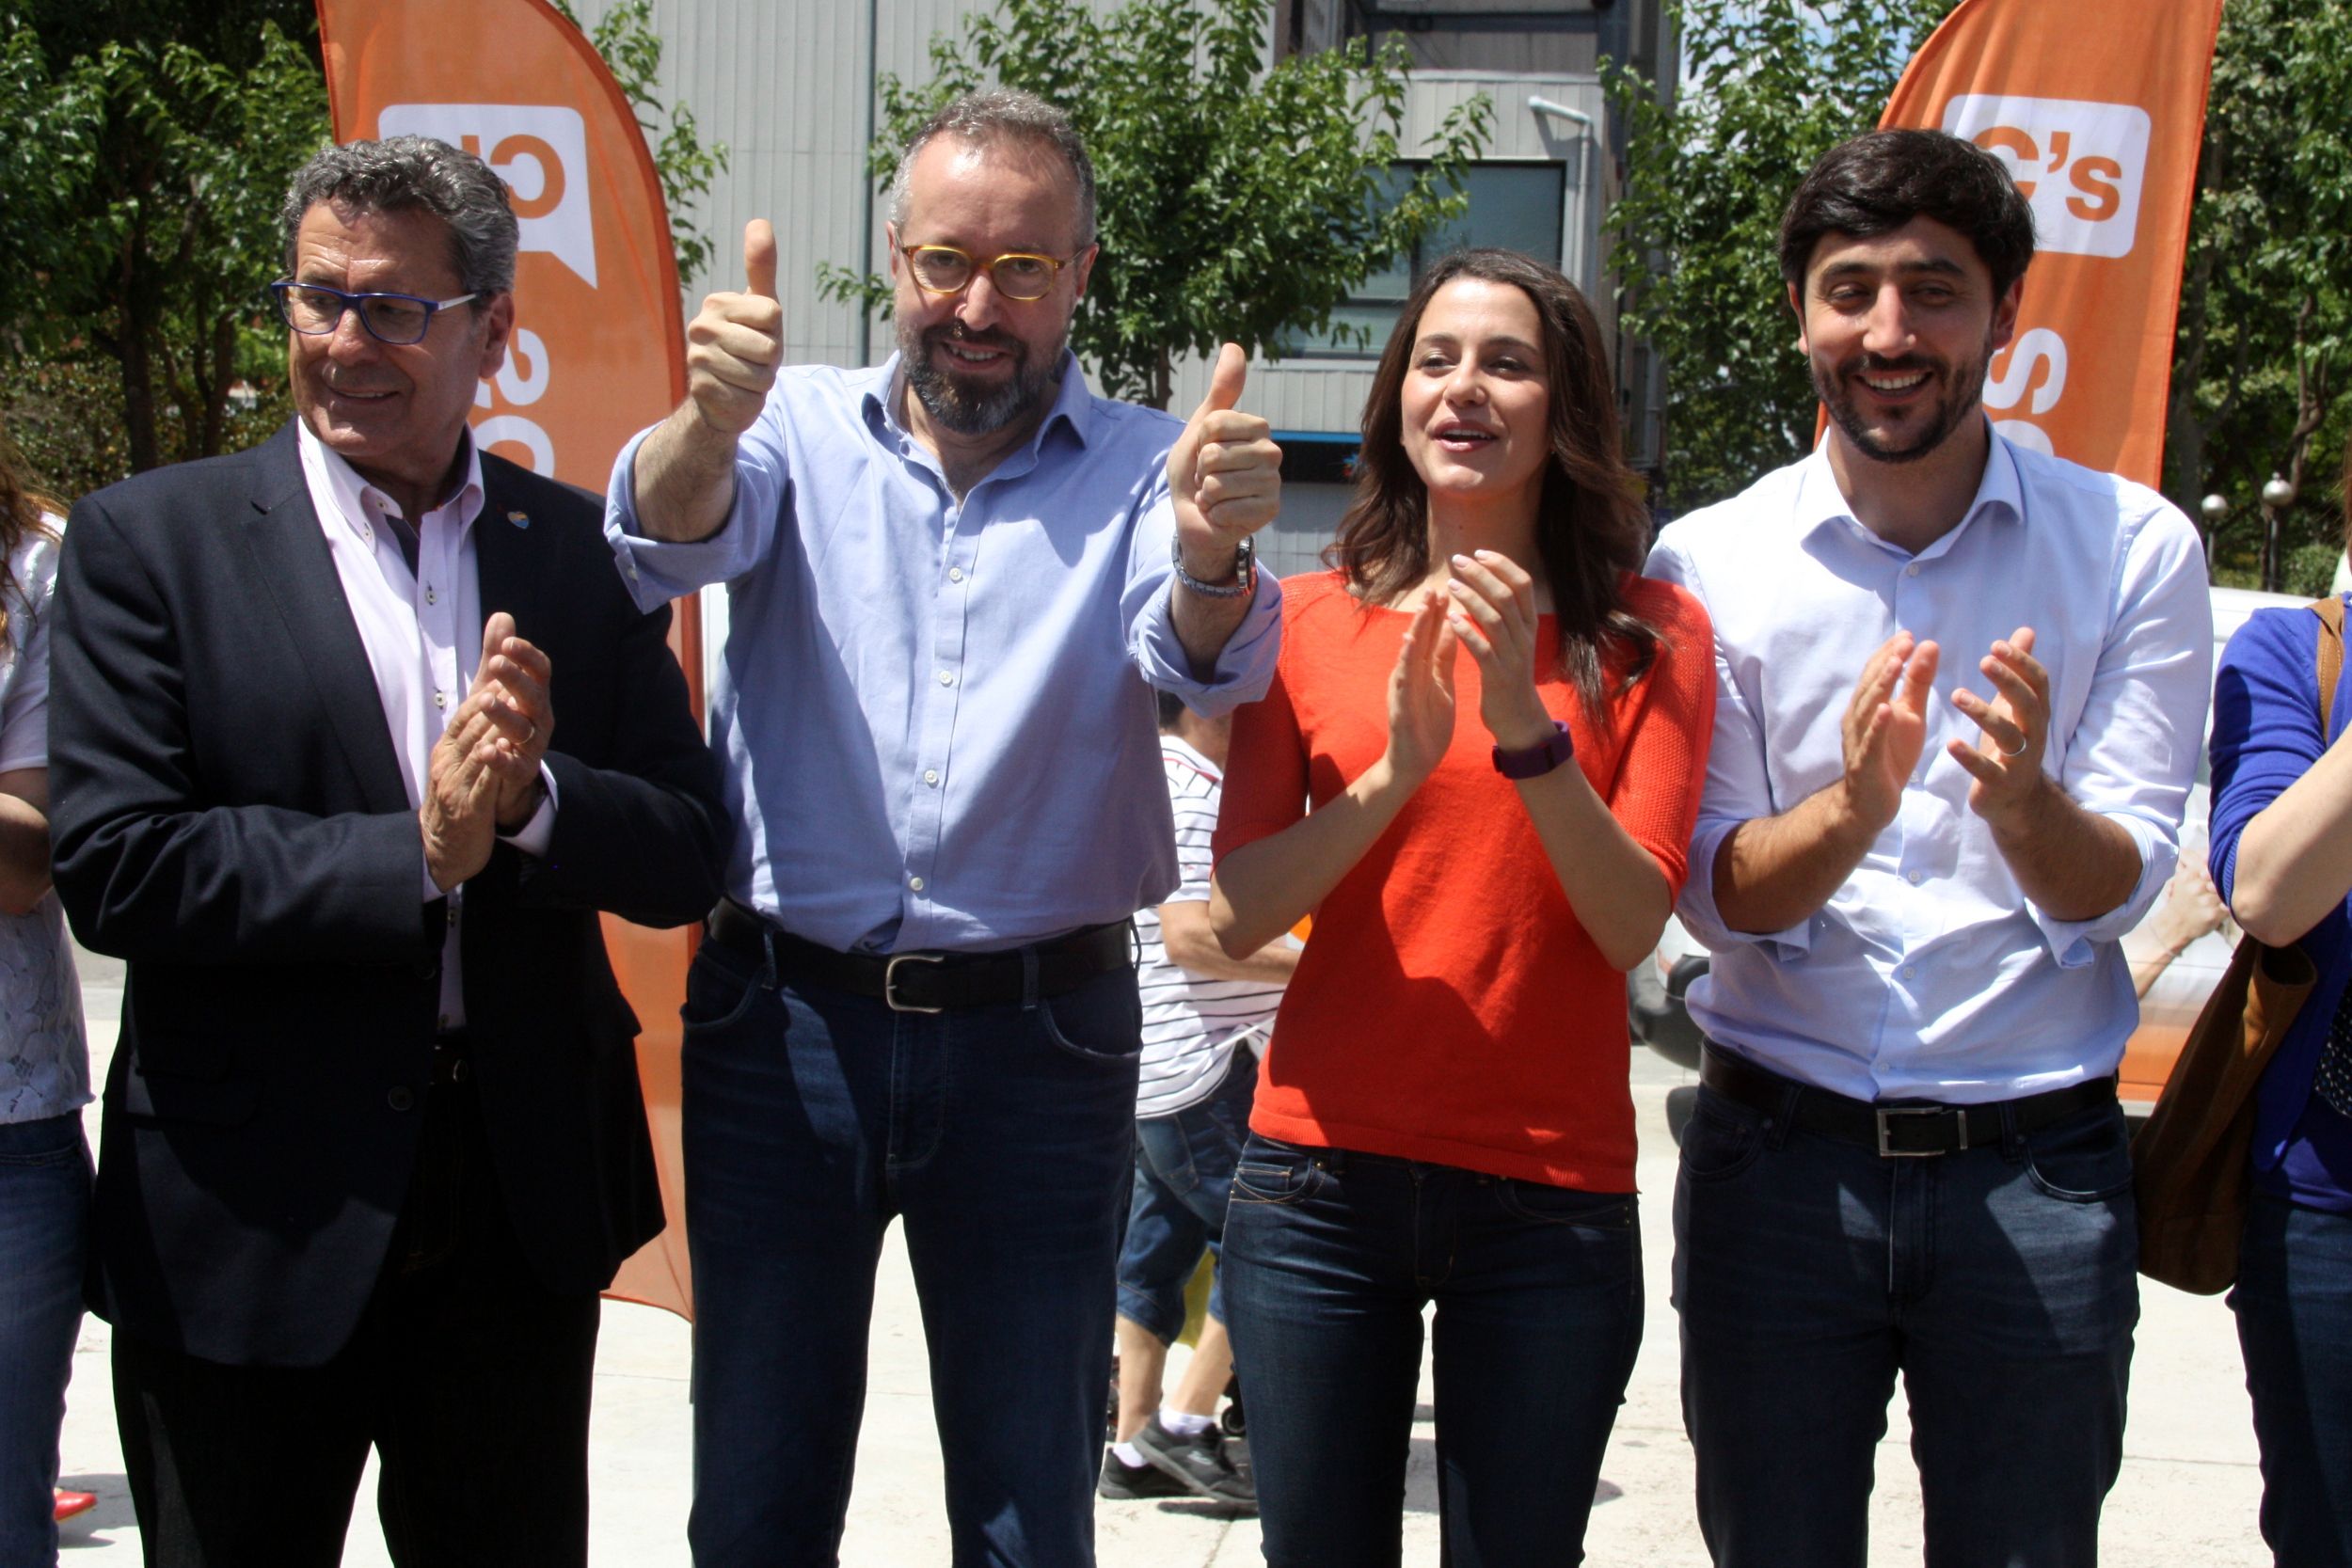 Girauta tensa la campaña: “El combinado C's-Rajoy no existe”